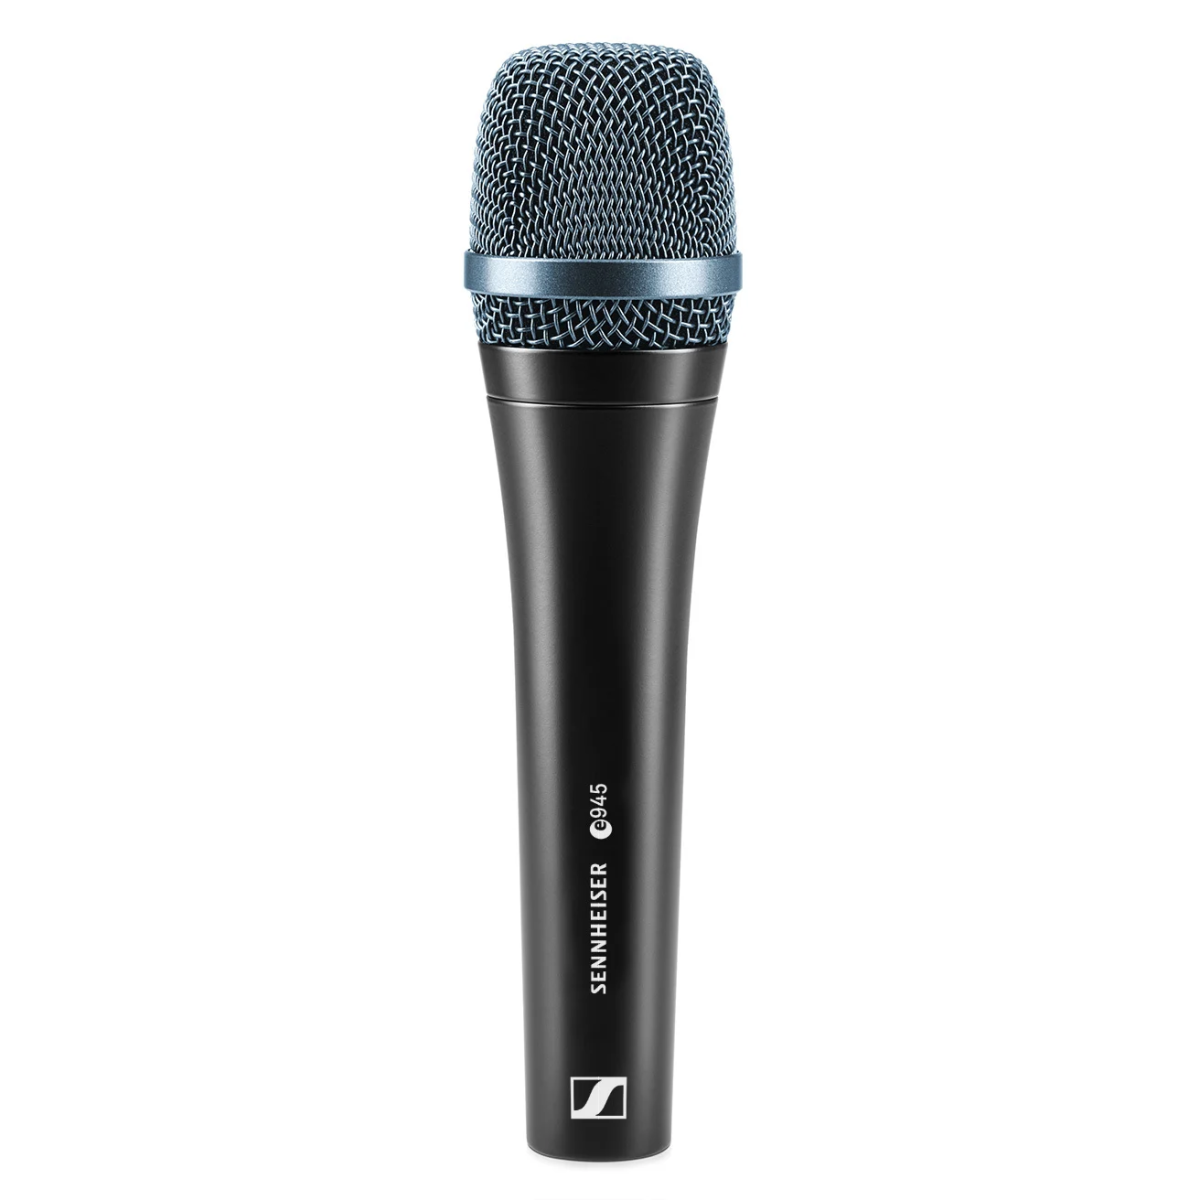 SENNHEISER E 945 - динамический вокальный микрофон, суперкардиоида, 40 - 18000 Гц, 350 Ом